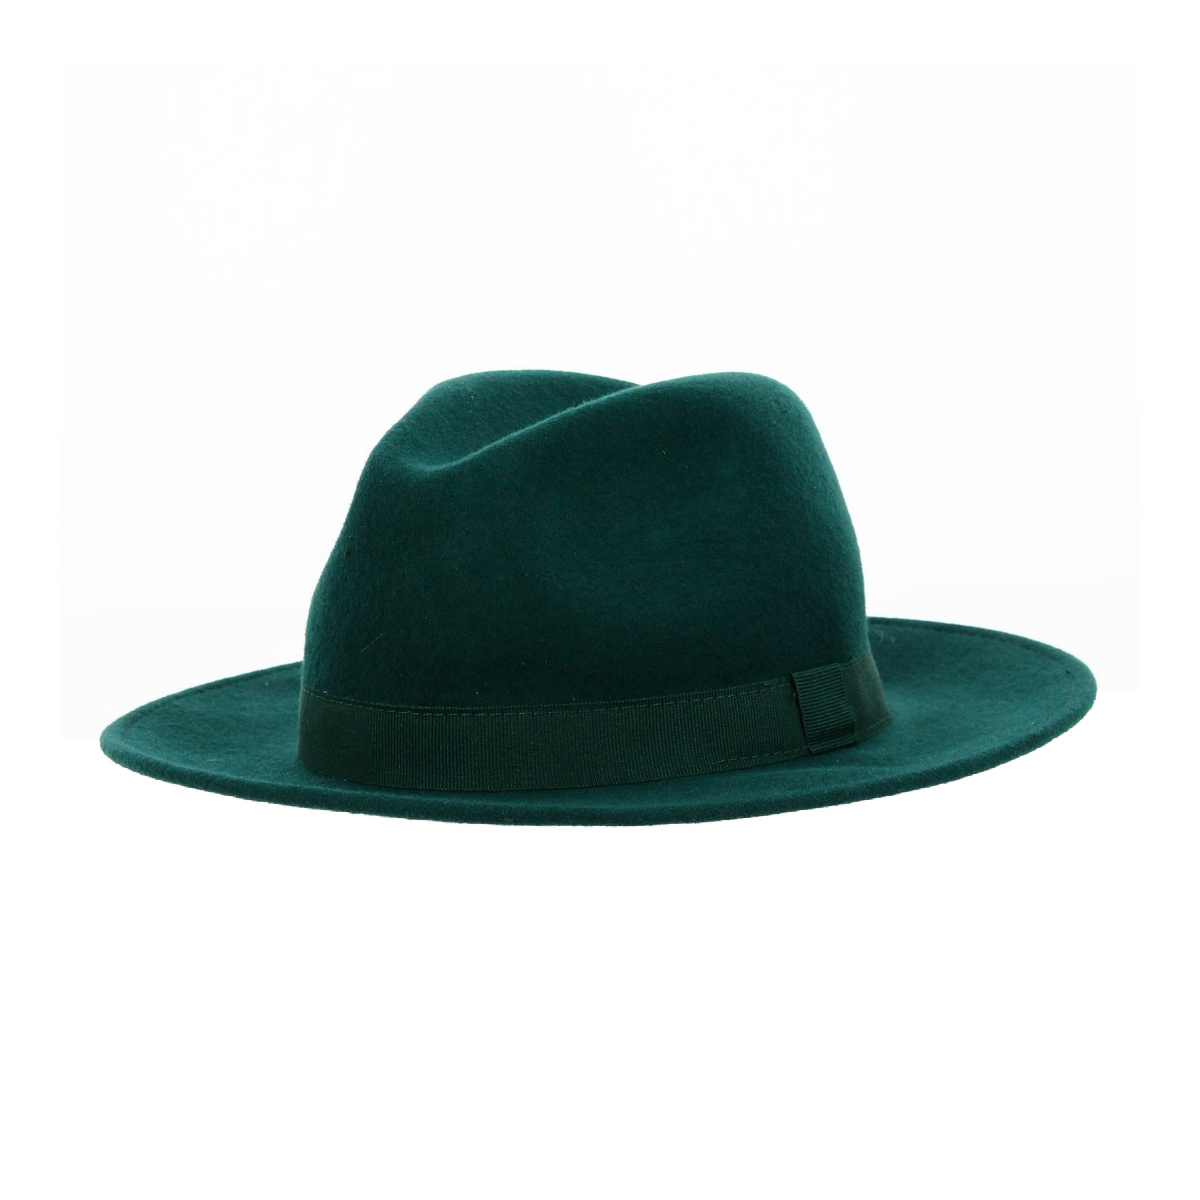 Fedora Felt Hat Black Wool Waterproof Black Hat - Traclet Reference ...